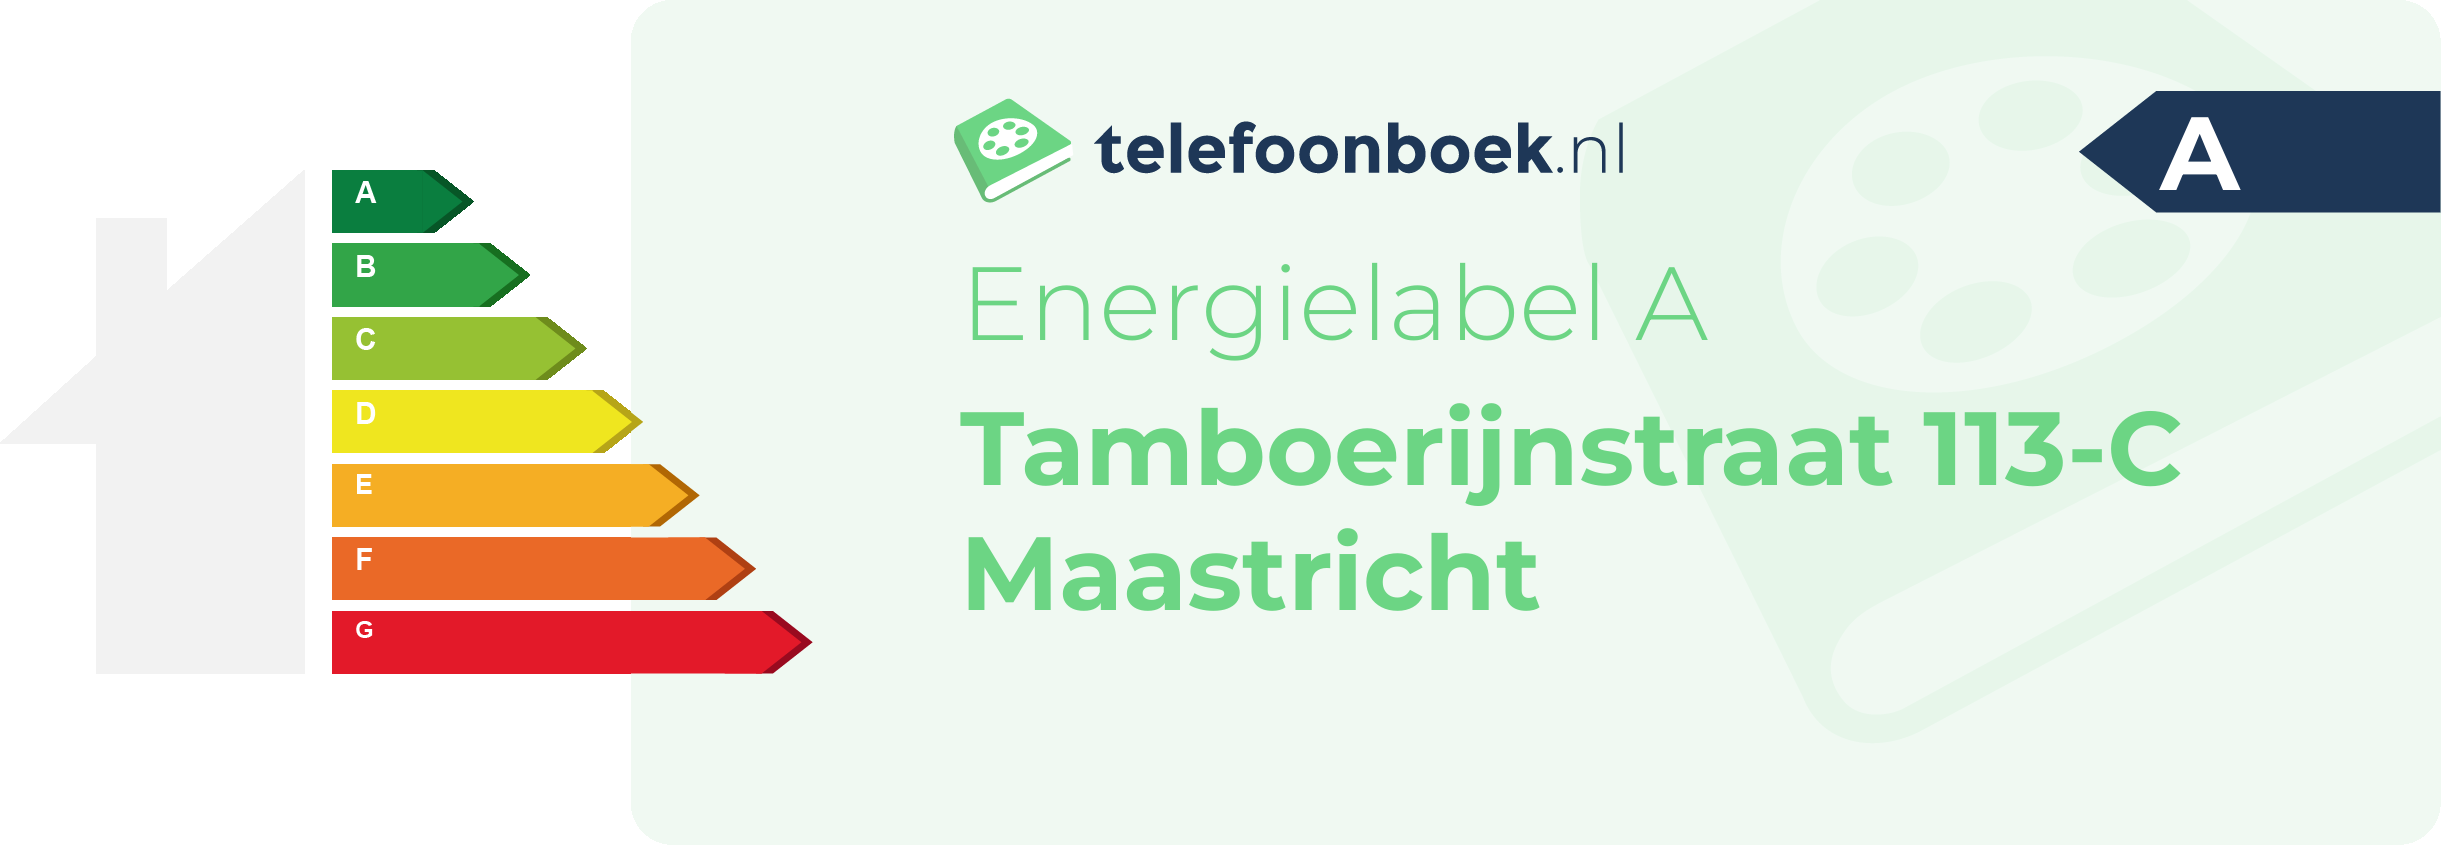 Energielabel Tamboerijnstraat 113-C Maastricht